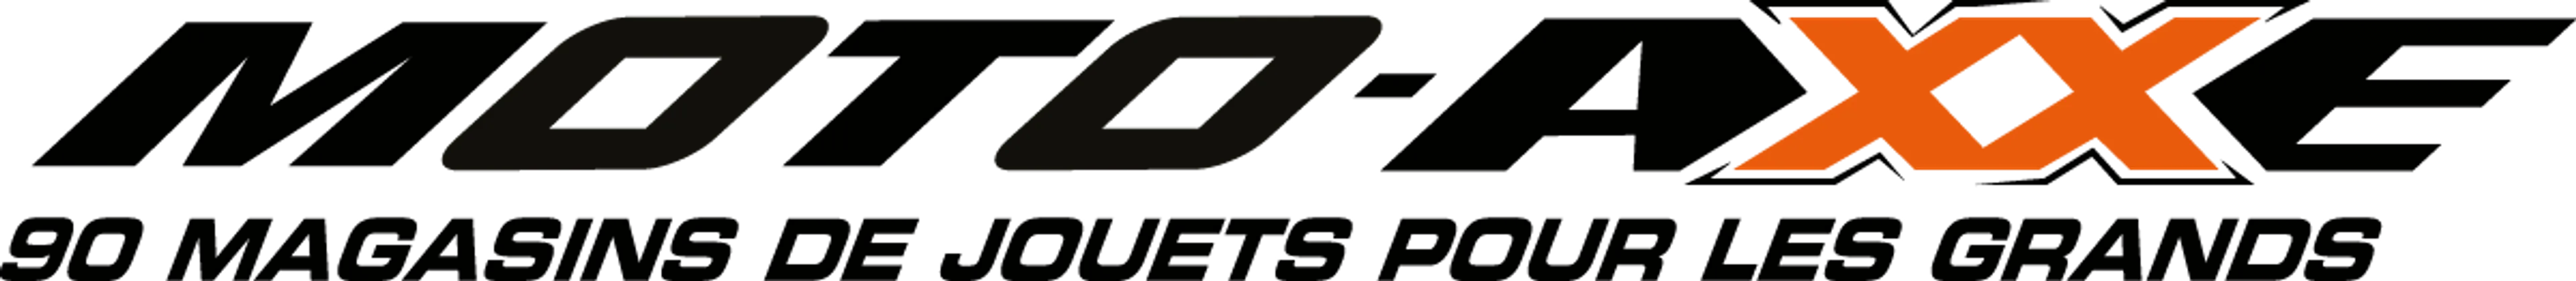 MOTO AXXE logo